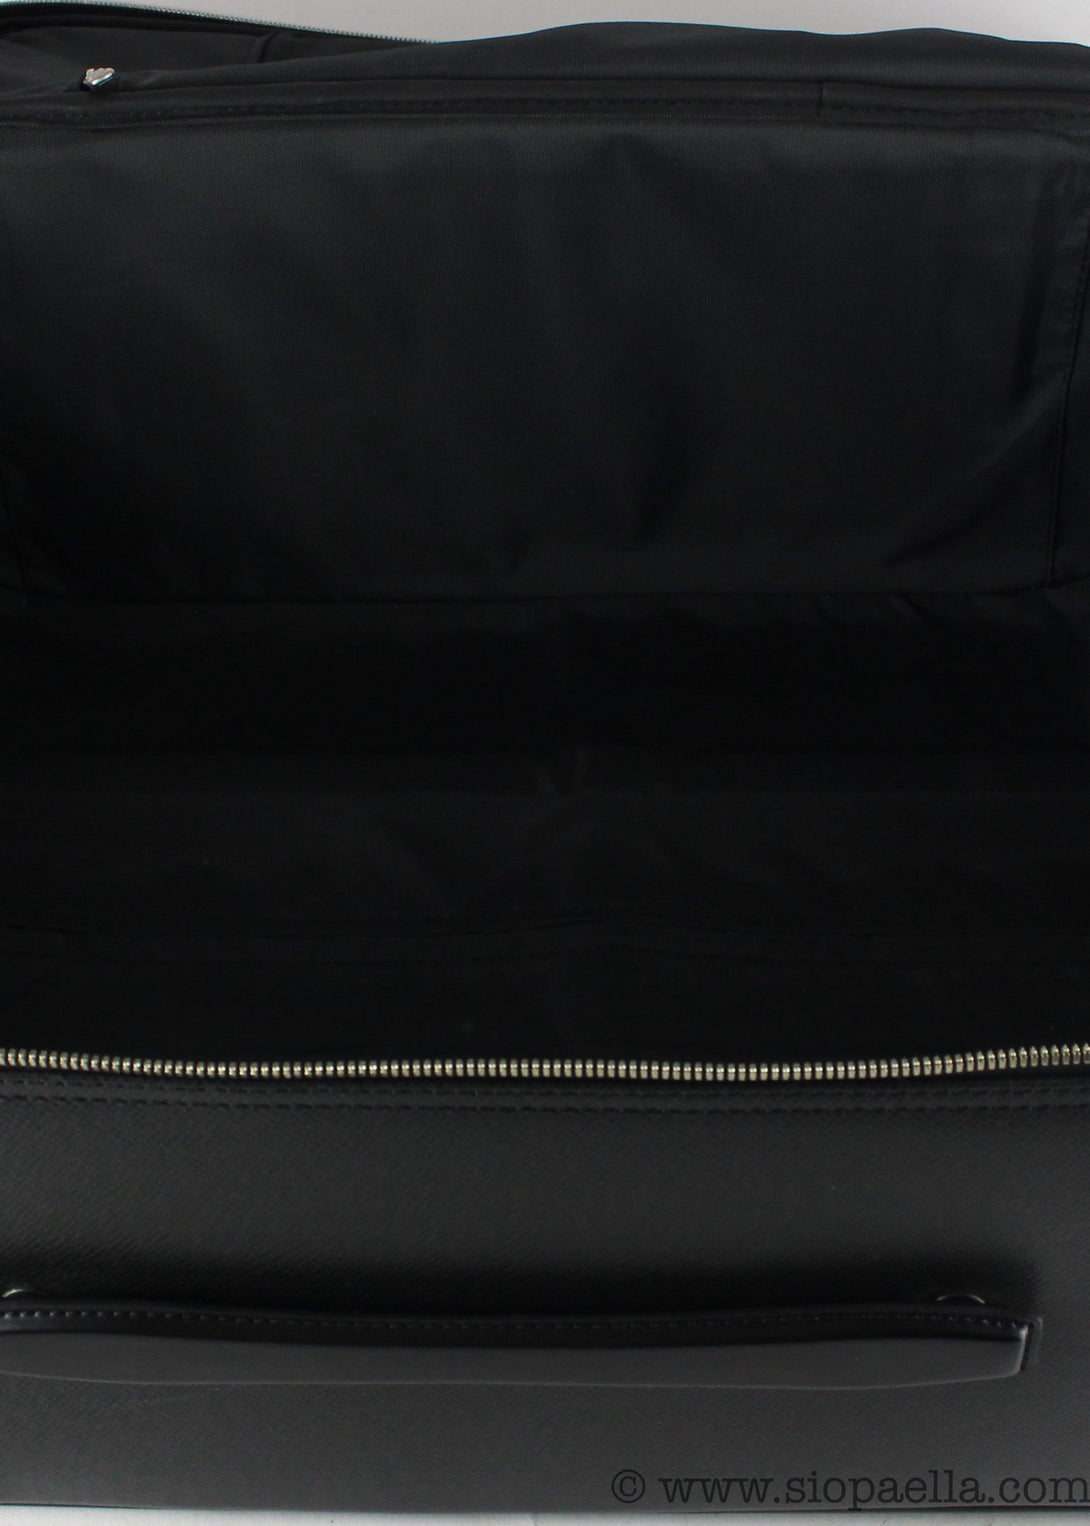 Louis Vuitton Pégase 55 Business Suitcase - Siopaella Designer Exchange